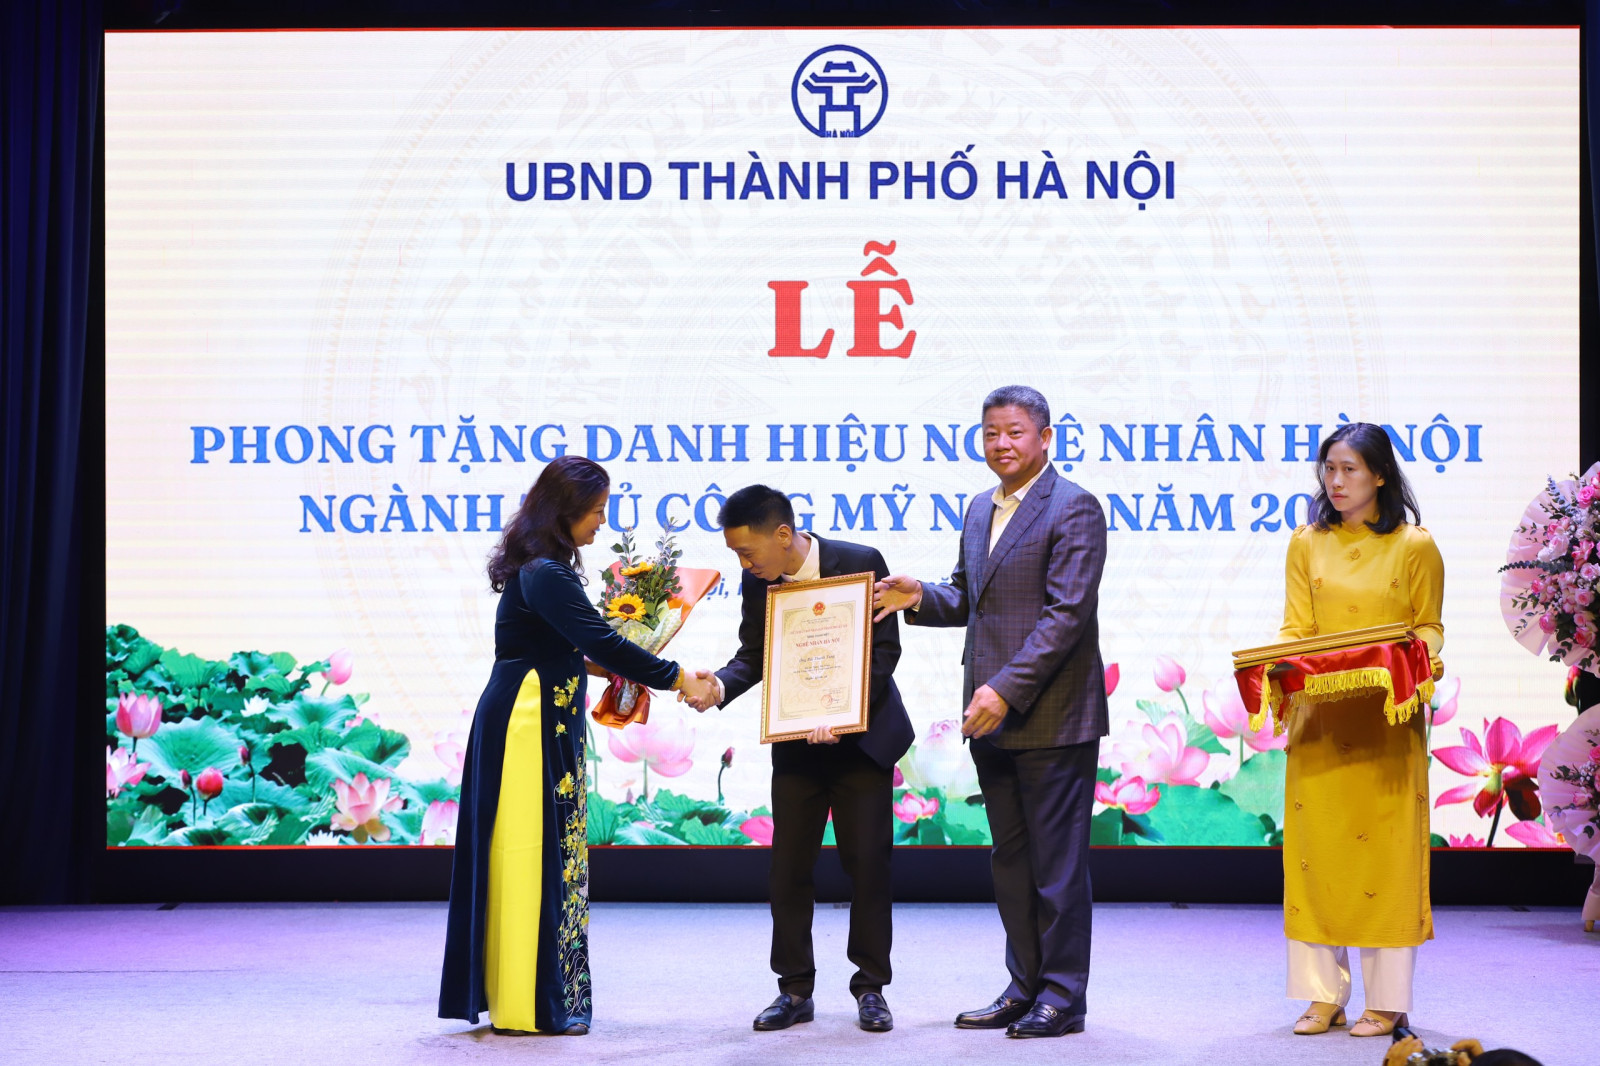 Nghệ nhân Bùi Thanh Tùng được phong tặng danh hiệu Nghệ nhân Hà Nội - Ảnh 9